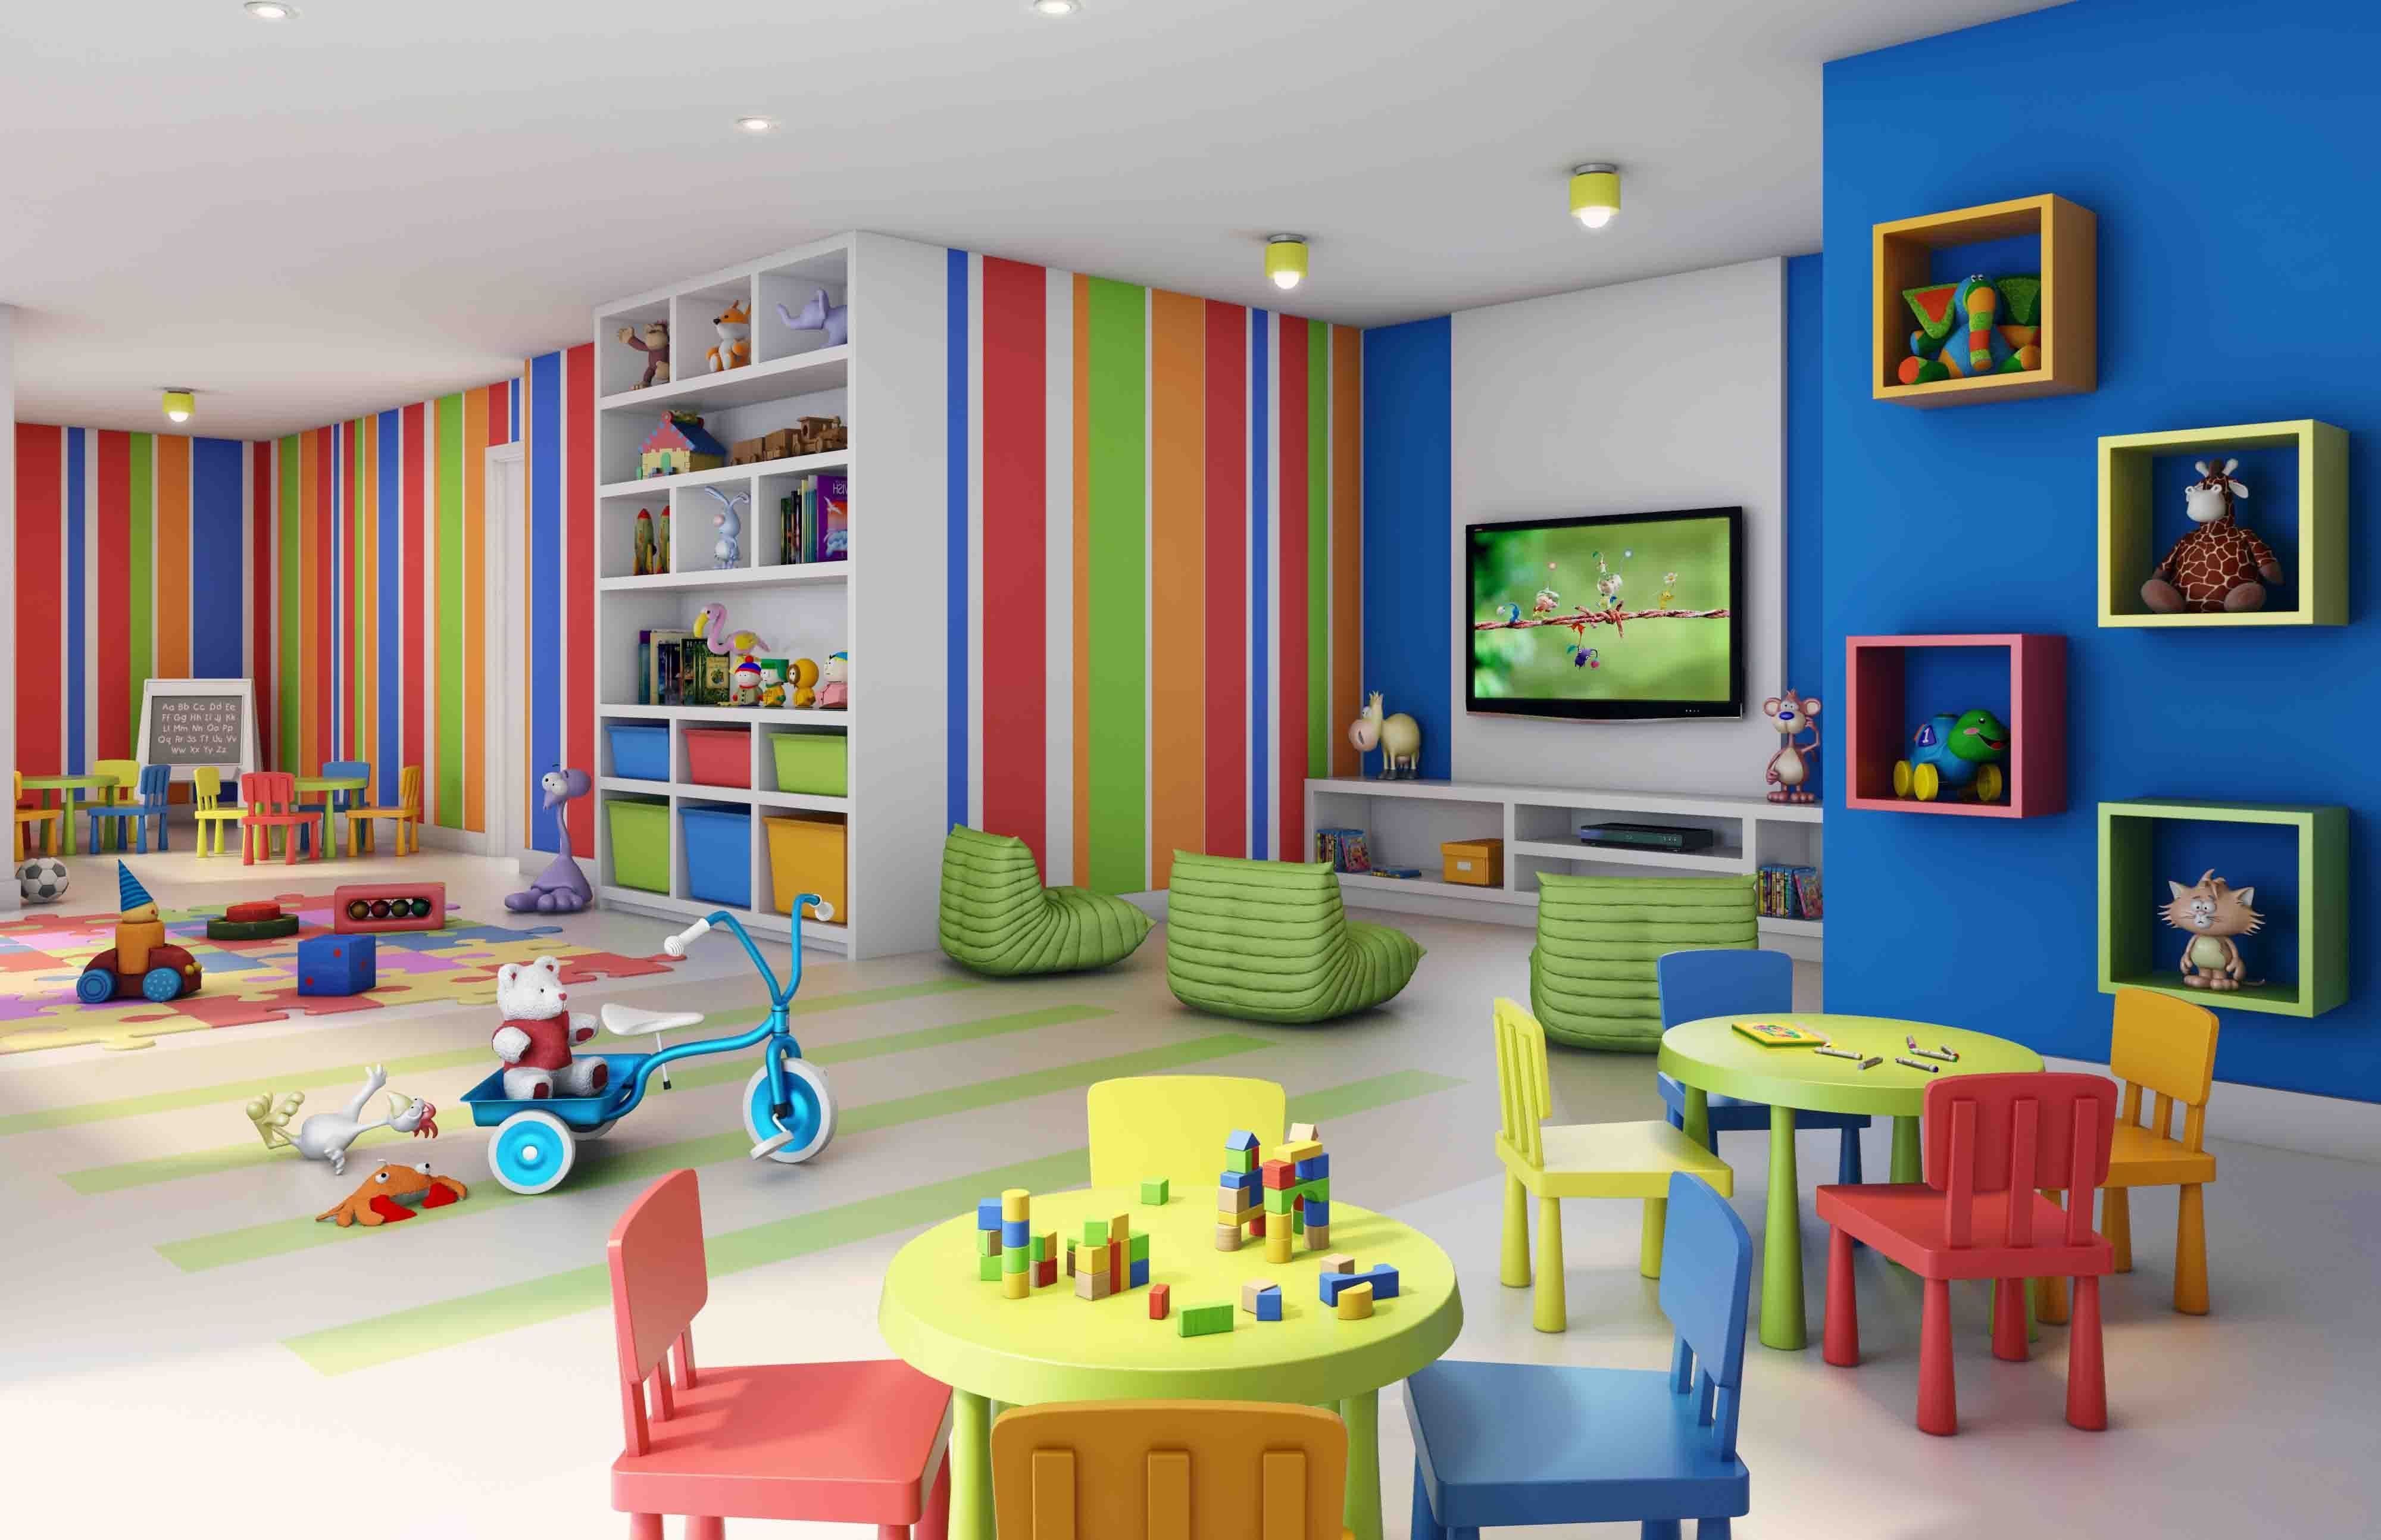 Три архитектурные студии создали проект переоборудования здания и интерьера склада в детский сад